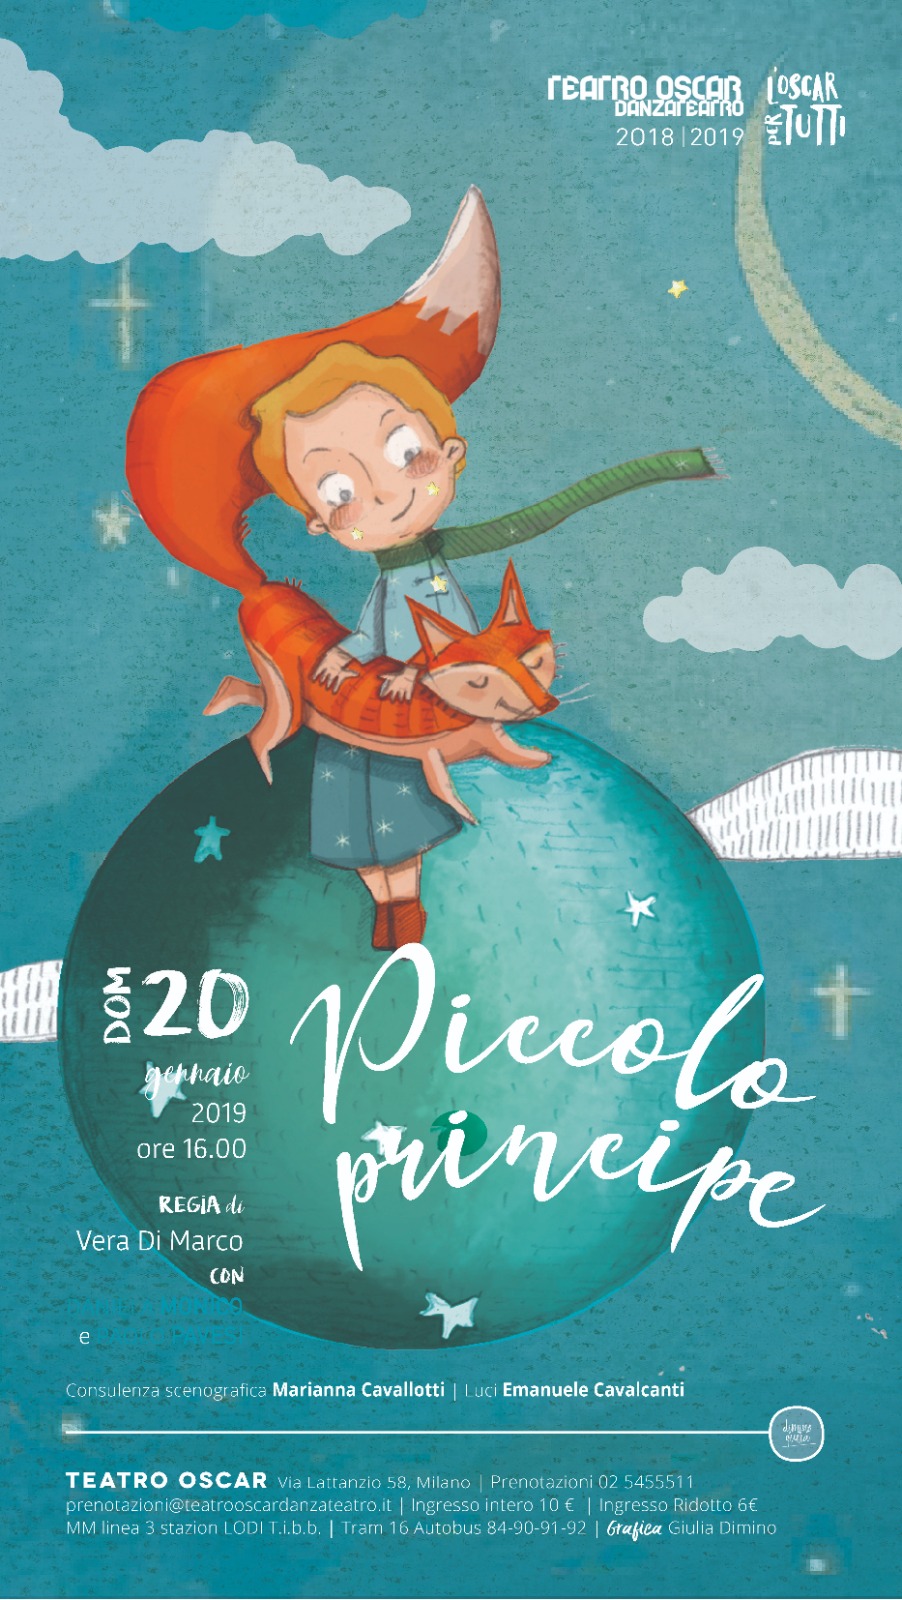 2019 piccolo principe